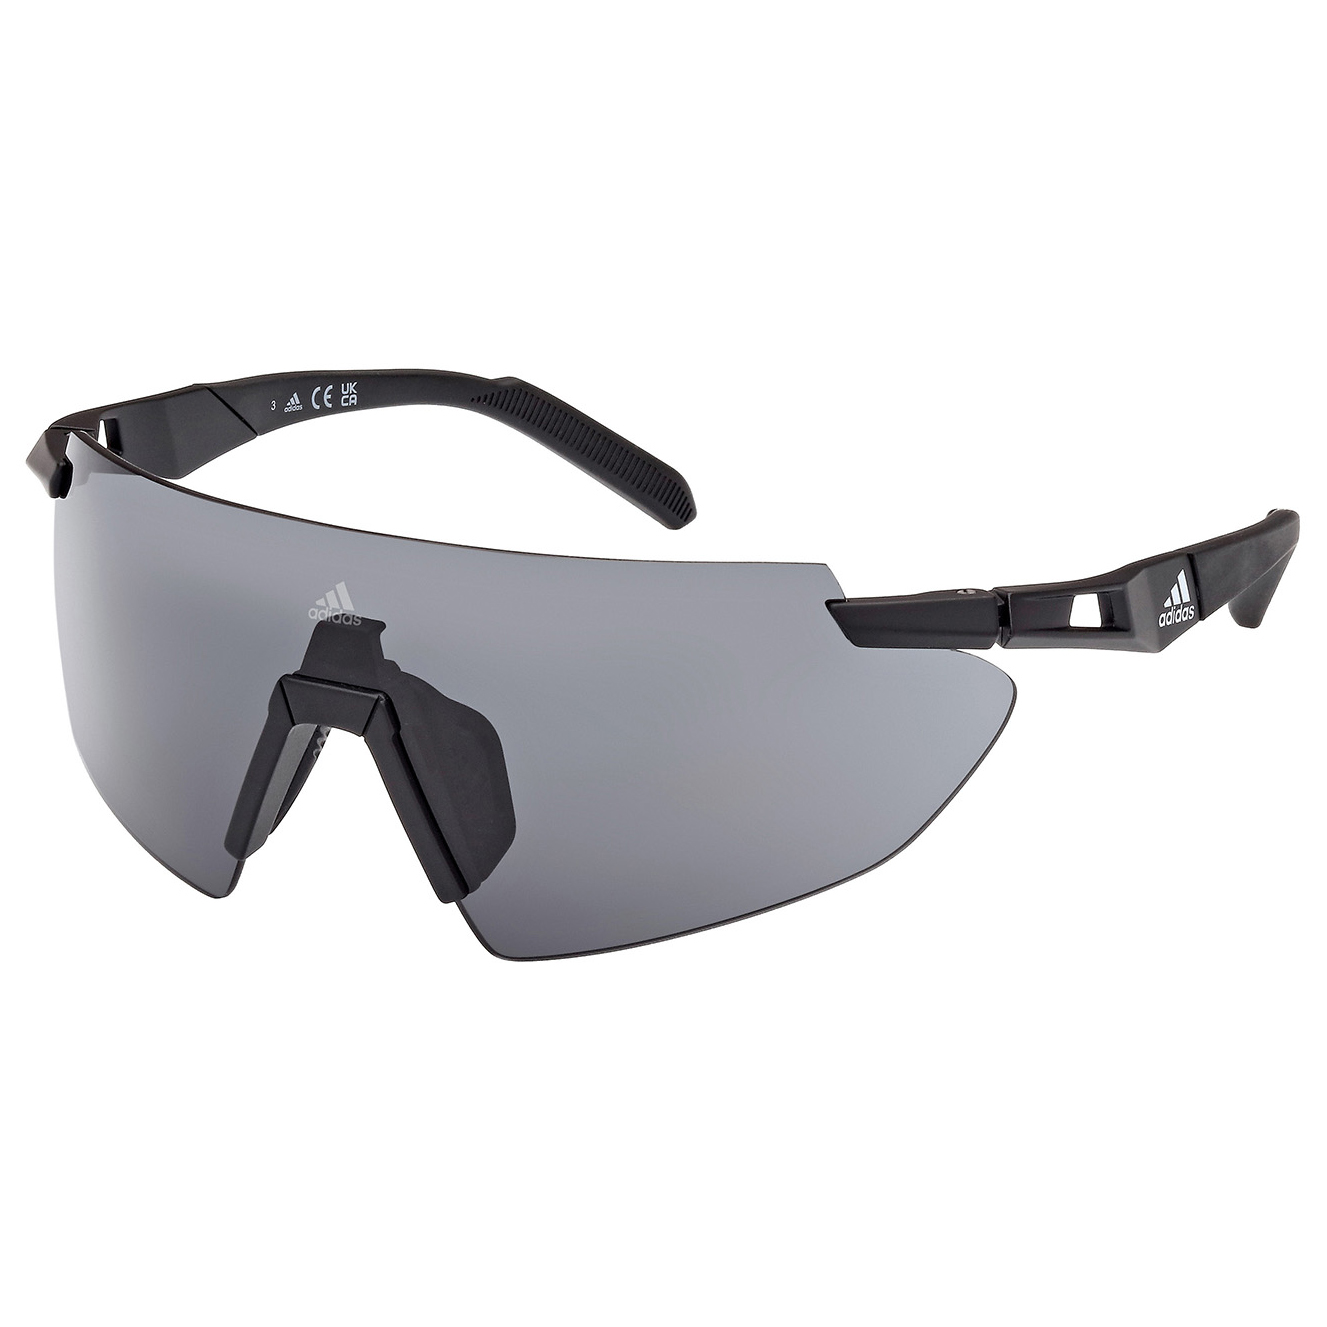 Велосипедные очки Adidas SP0077 Cat 3 + Spare Lens Cat 0, матовый черный велосипедные очки shimano equinox 3 цвет оправы черный